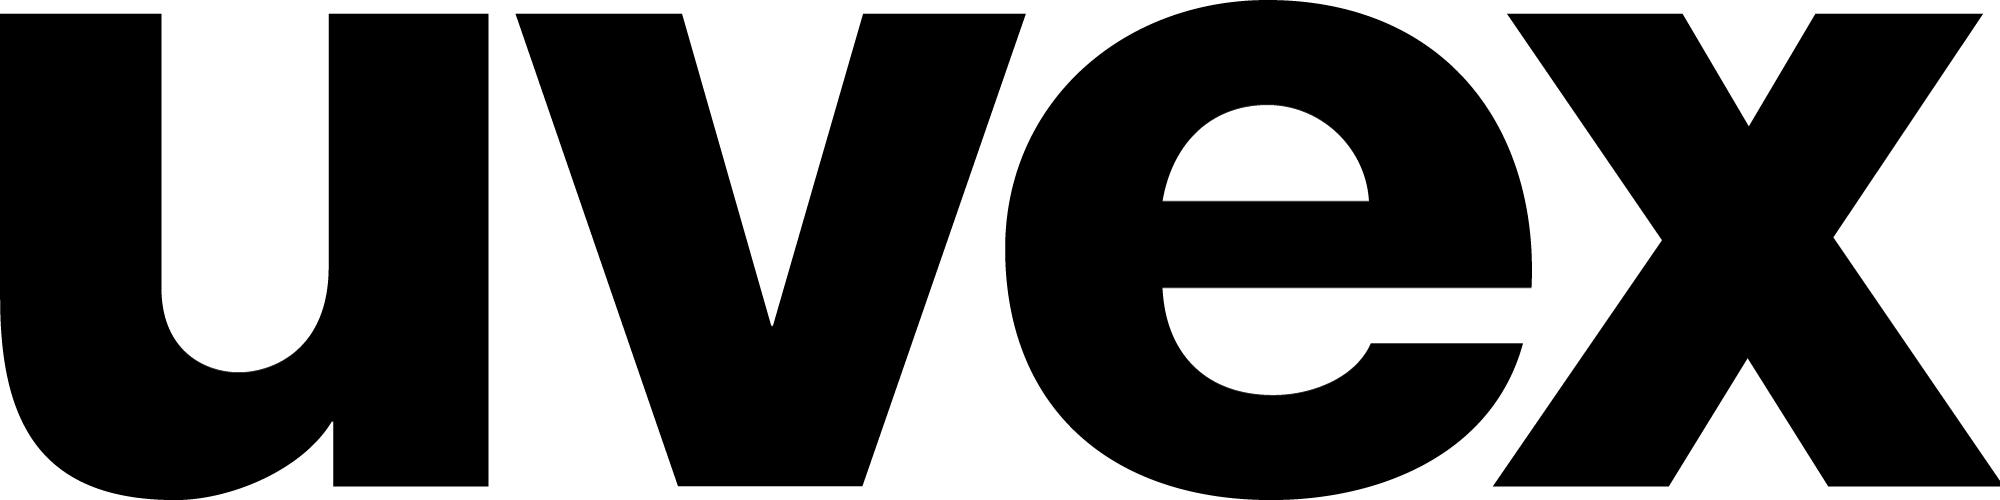 UVEX ヘルメット - Horsy Net-Store